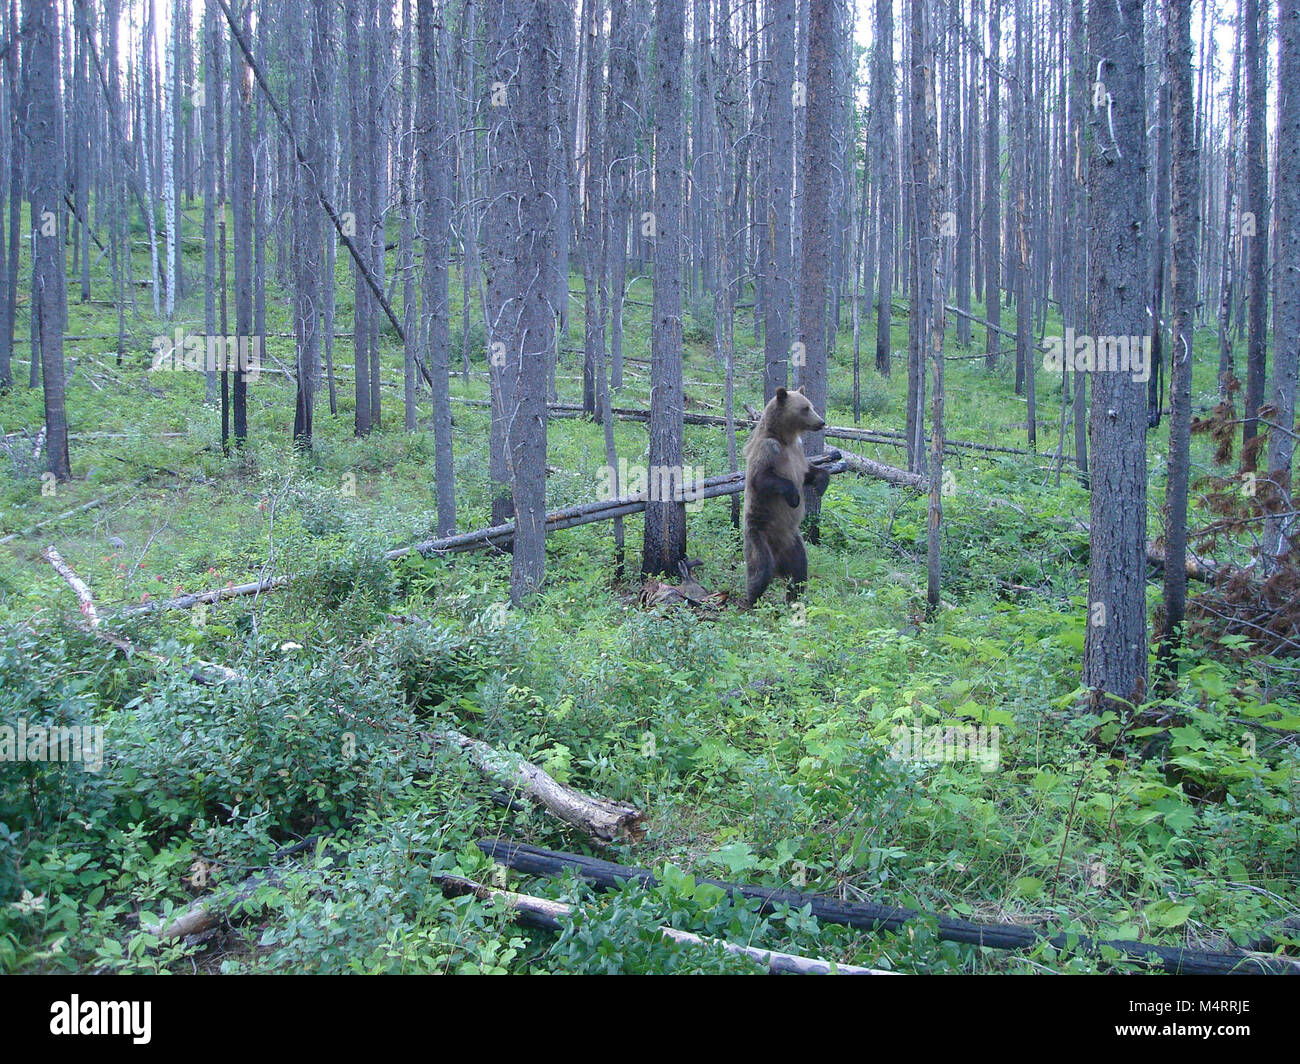 Un grizzly frottant sur un arbre fixe avec fil pour accrocher les échantillons de poils. Une caméra à distance a été mis en place pour surveiller et observer l'emplacement des chicots de cheveux le comportement des ours. Barbelés chicots de cheveux ont été utilisés pour recueillir des échantillons de cheveux de l'ours grizzli dans tout l'écosystème de la Couronne du Continent dans le cadre de la division du Nord (Projet de l'ours grizzli. Ce projet a utilisé cette technique en collaboration avec les modèles statistiques pour estimer le nombre de grizzlis vivant dans l'écosystème, qui comprend le parc national des Glaciers. L'ADN a été extrait à partir de poils d'ours prélevés le long de routes et de sondage systematica Banque D'Images